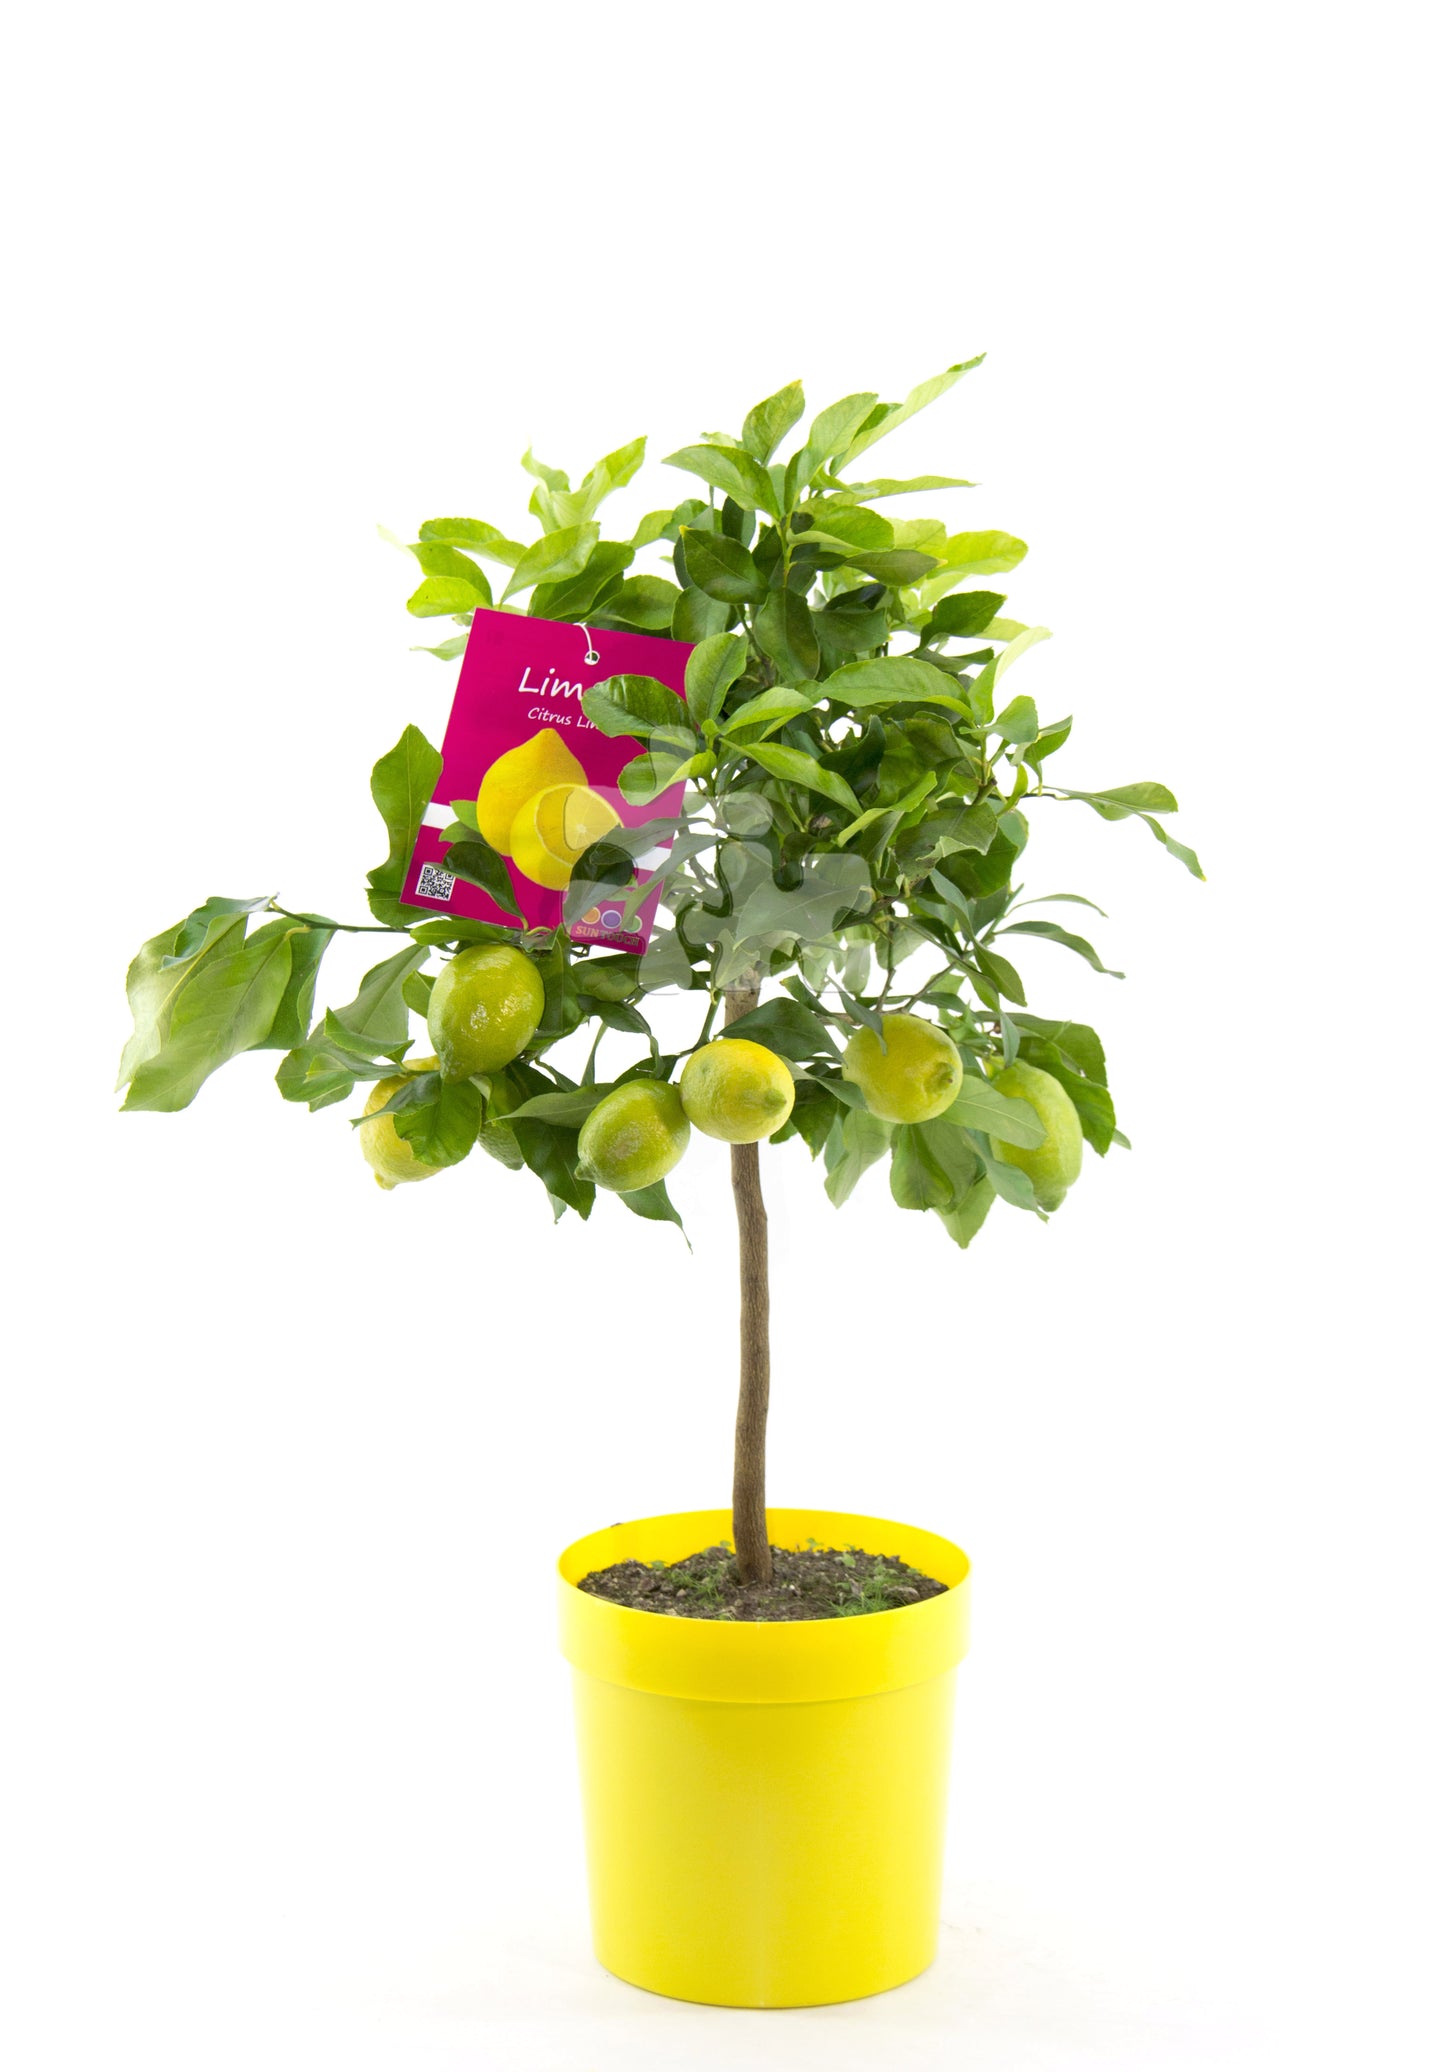 Citrus limon lunario 100-130 cm - Echter Zitronenbaum - Vier-Jahreszeiten-Zitrone